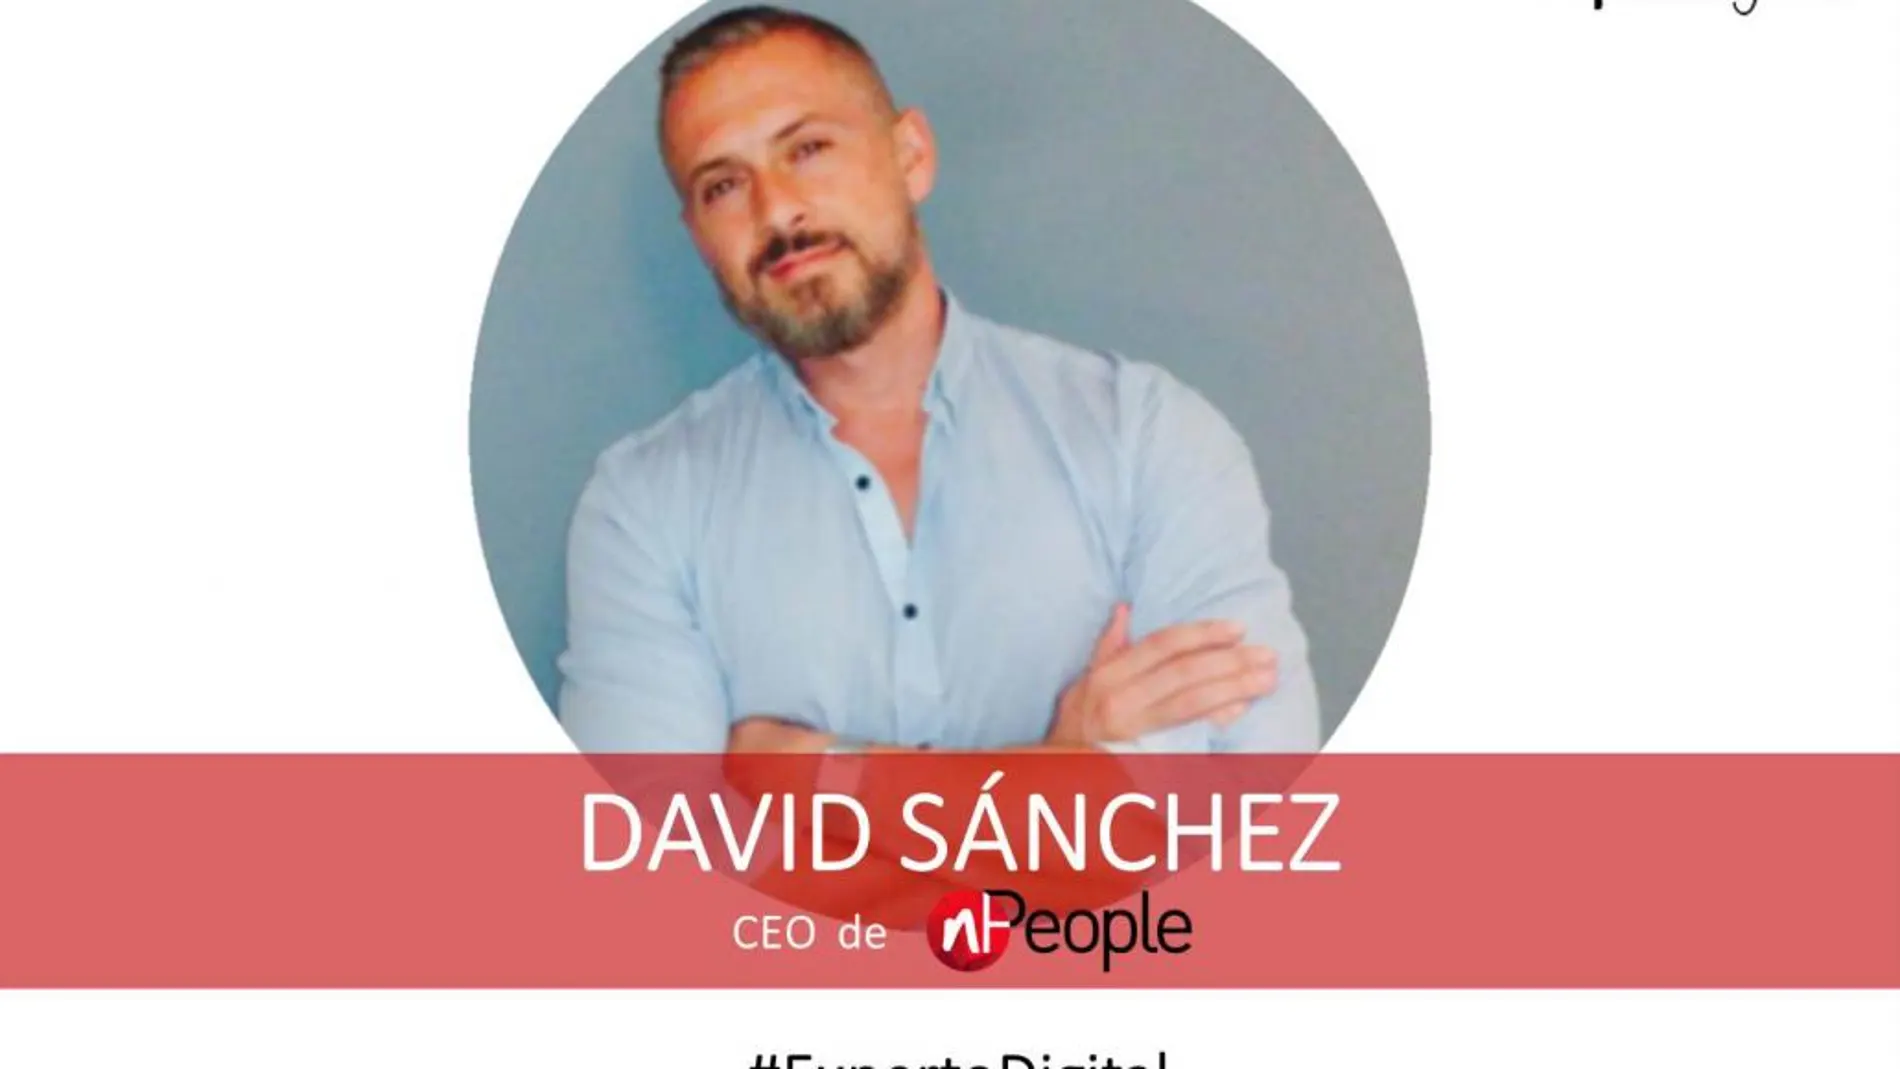 David Sánchez, CEO de nPeople: “Hay que convertir España en el hub económico-digital de Europa”